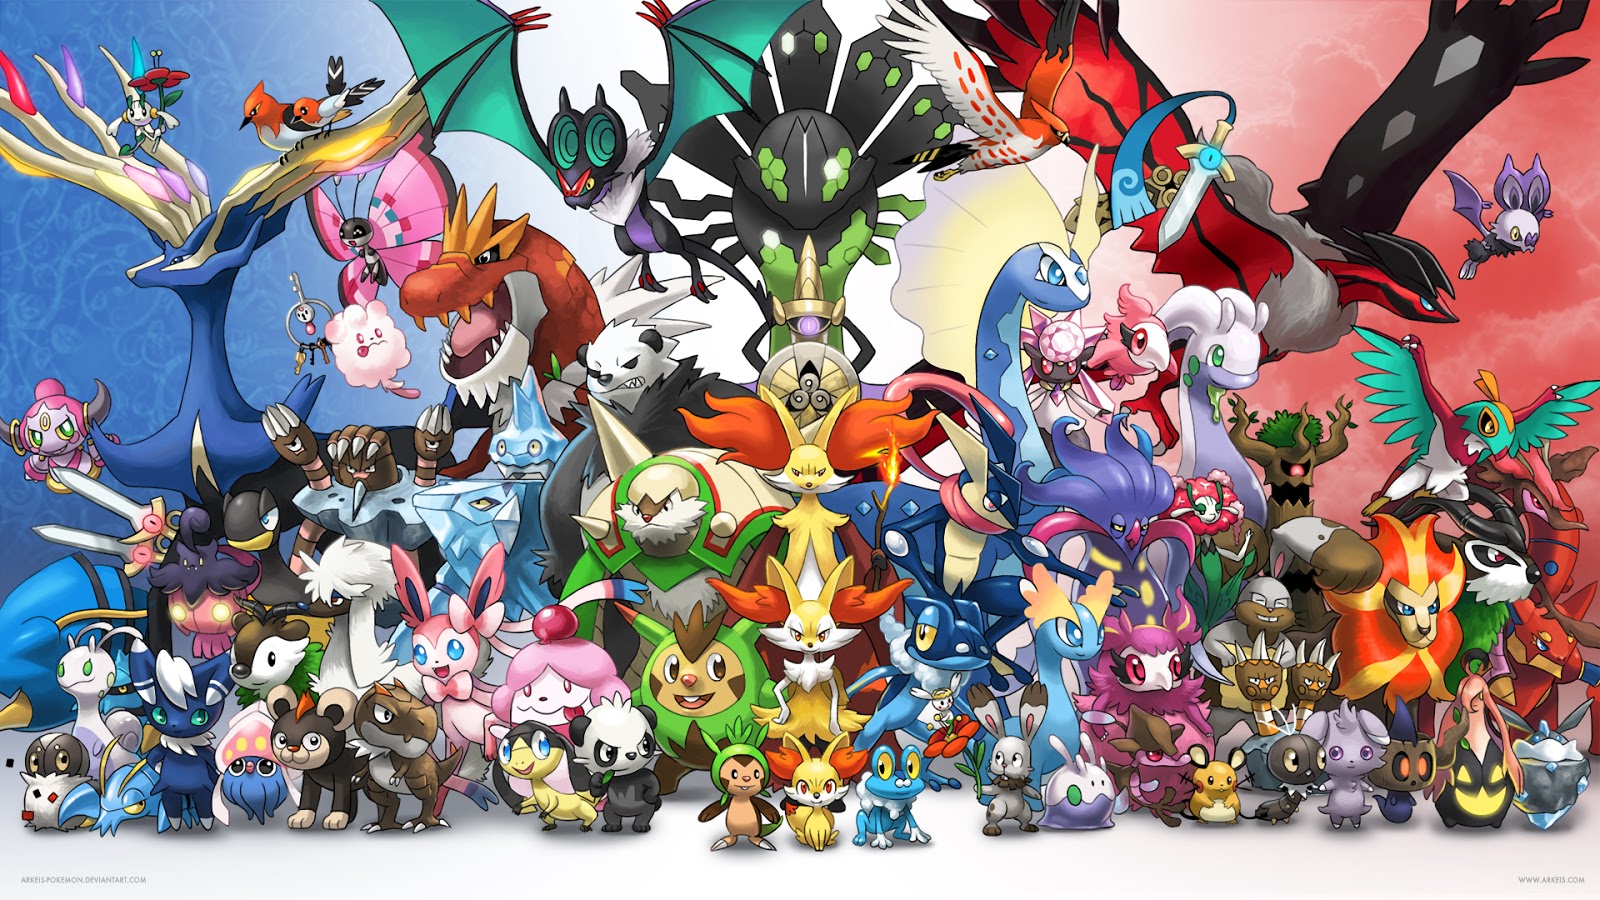 20 Pokémons da nova geração que são tão bons quanto os primeiros